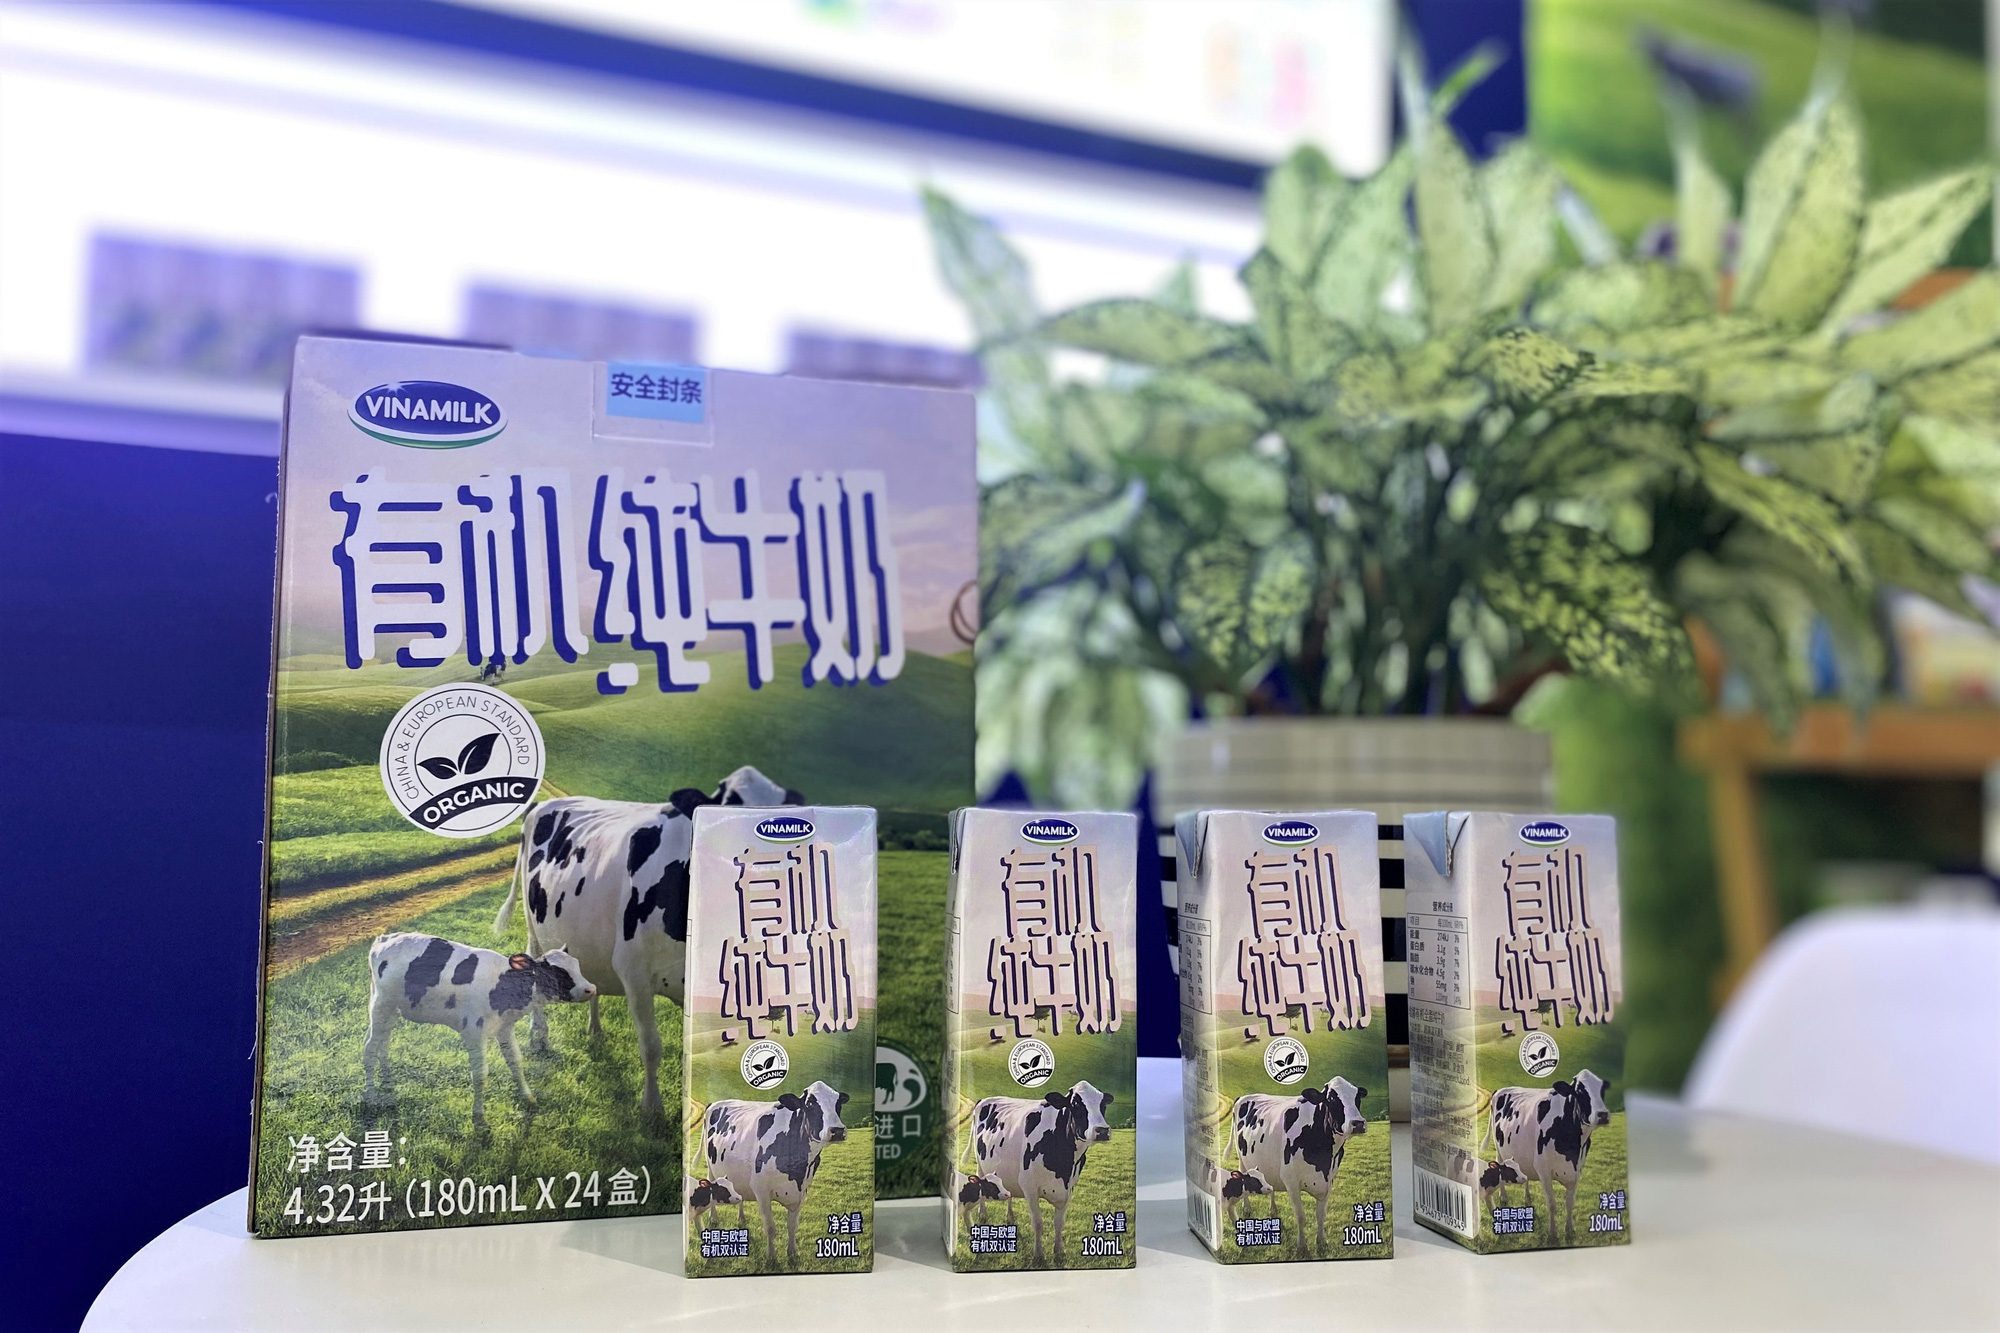 Sữa tươi của Vinamilk chính thức “chào sân” tại triển lãm quốc tế hàng đầu Thượng Hải - Ảnh 2.